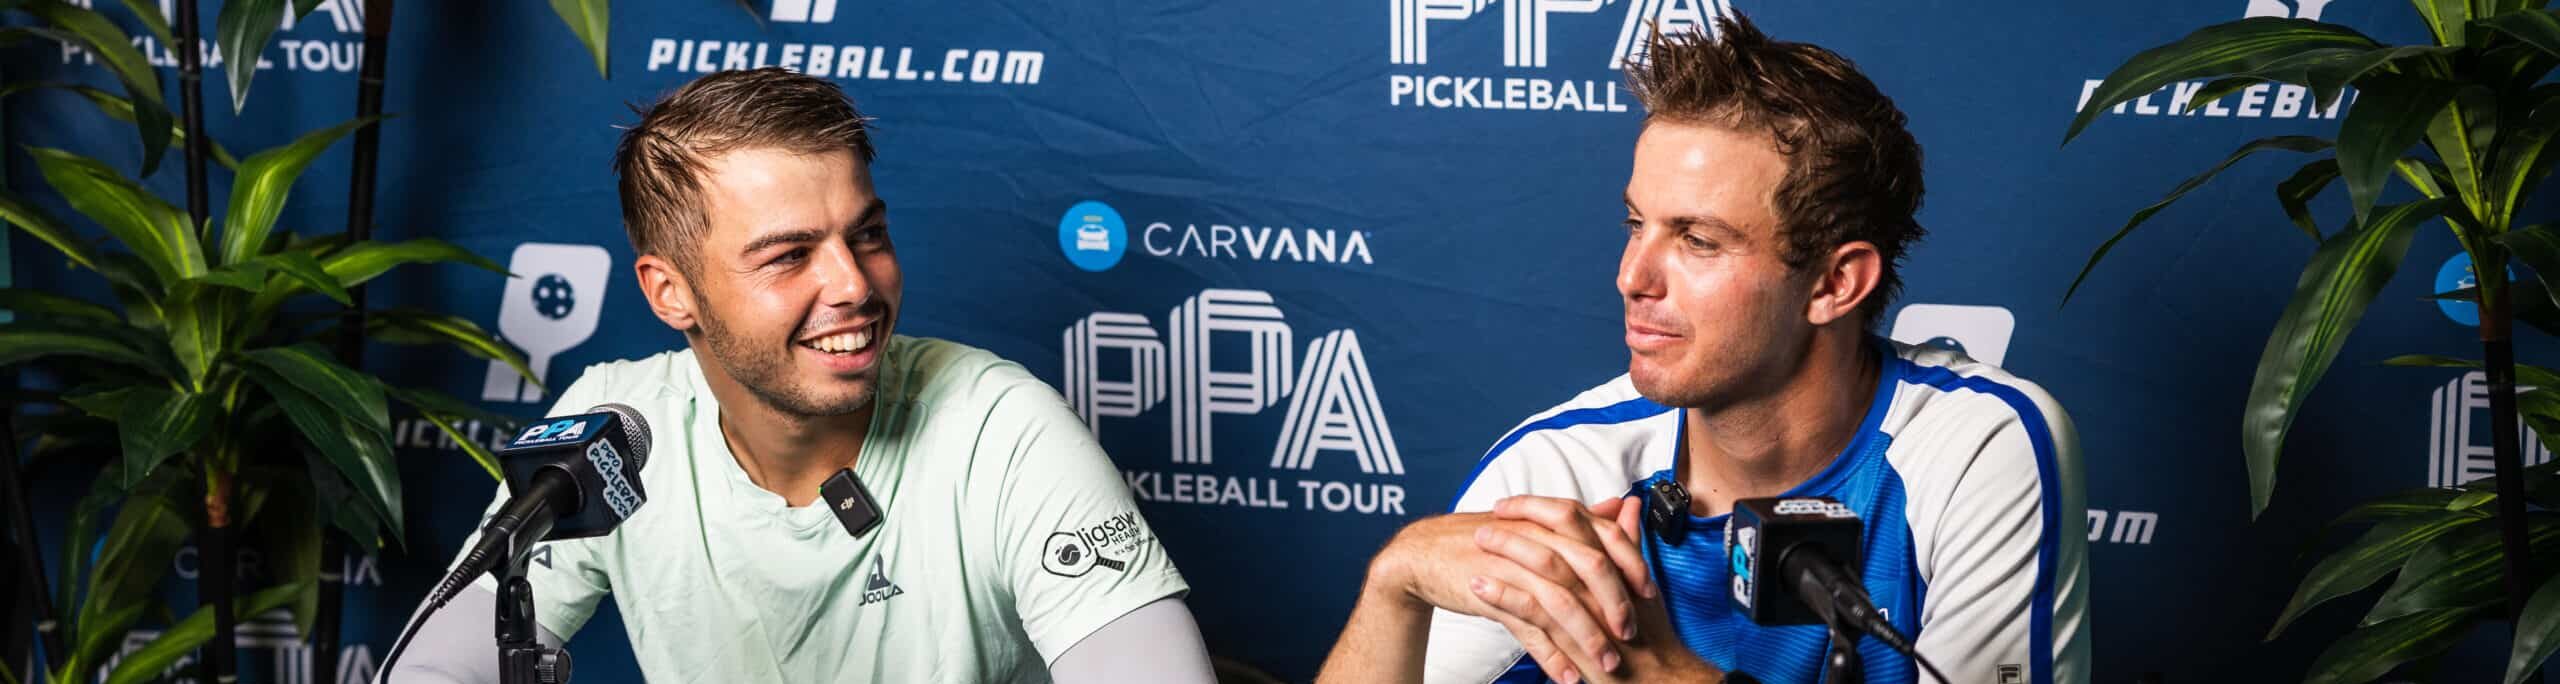 Carvana PPA Tour - Post-Match Interview - Ben Johns - Collin Johns